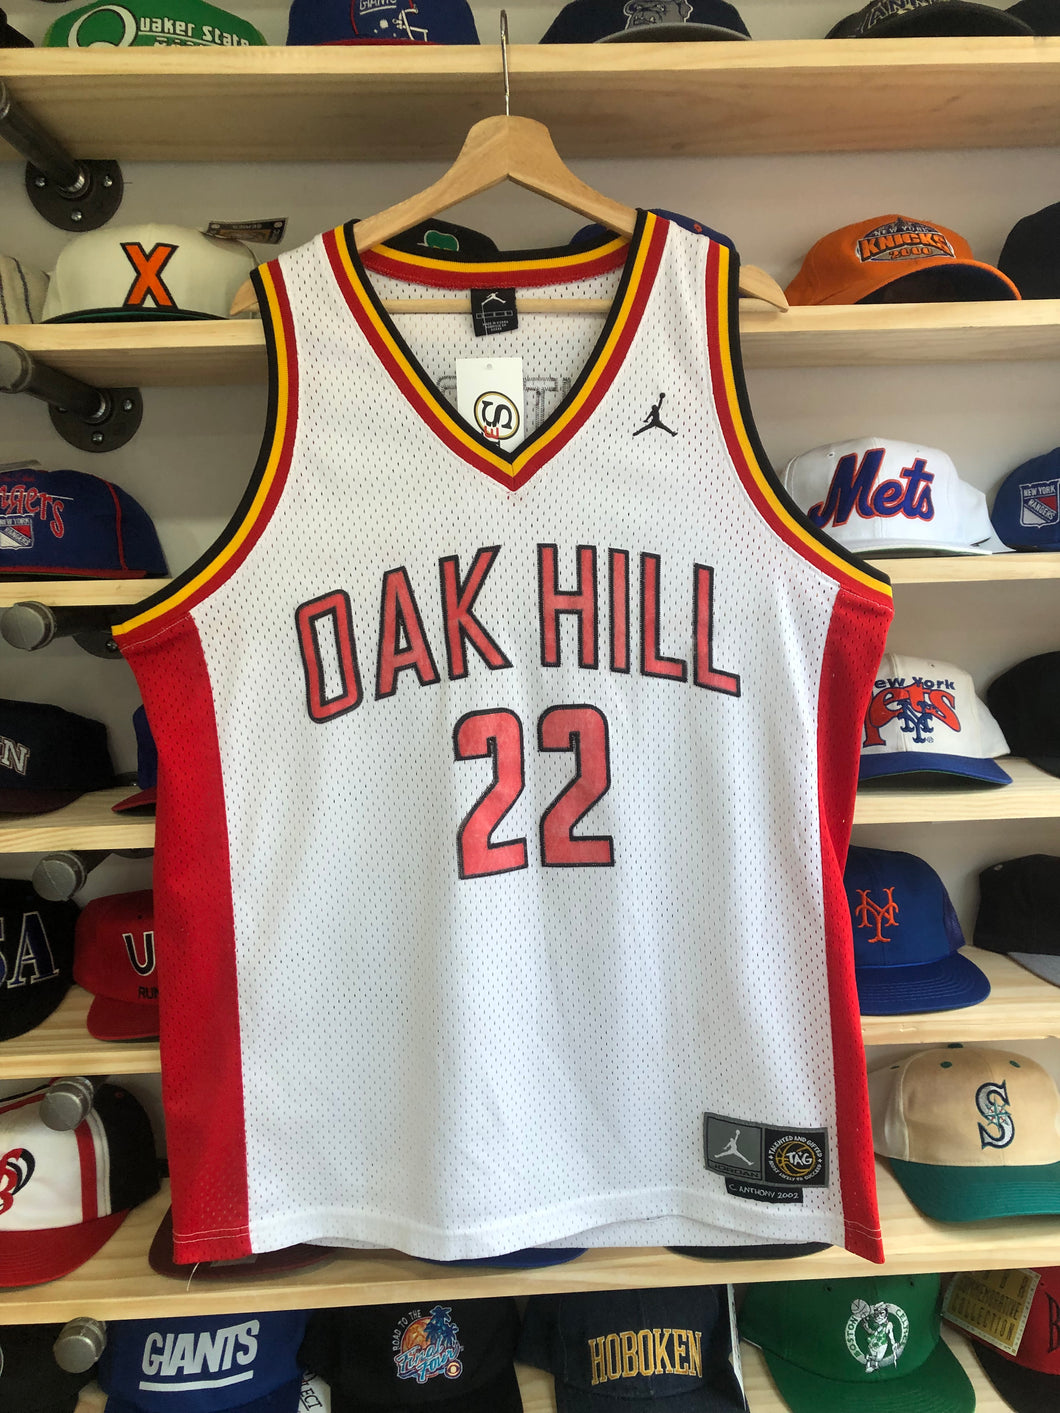 Vintage Jordan Brand Oak Hill Carmelo Anthony Jersey Size Large